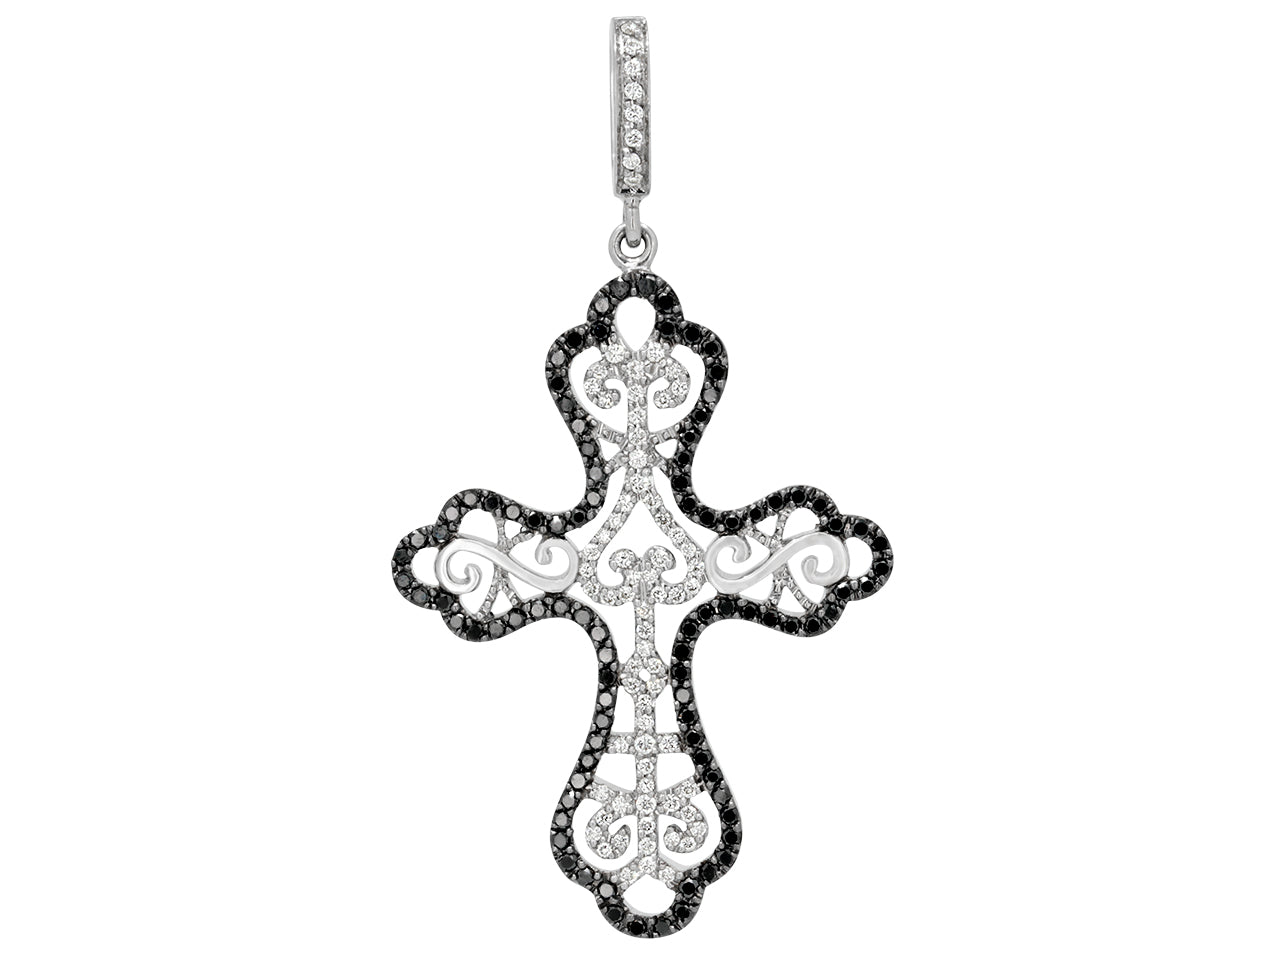 Rhonda Faber Green Black and White Diamond Cross Pendant in 18K White Gold